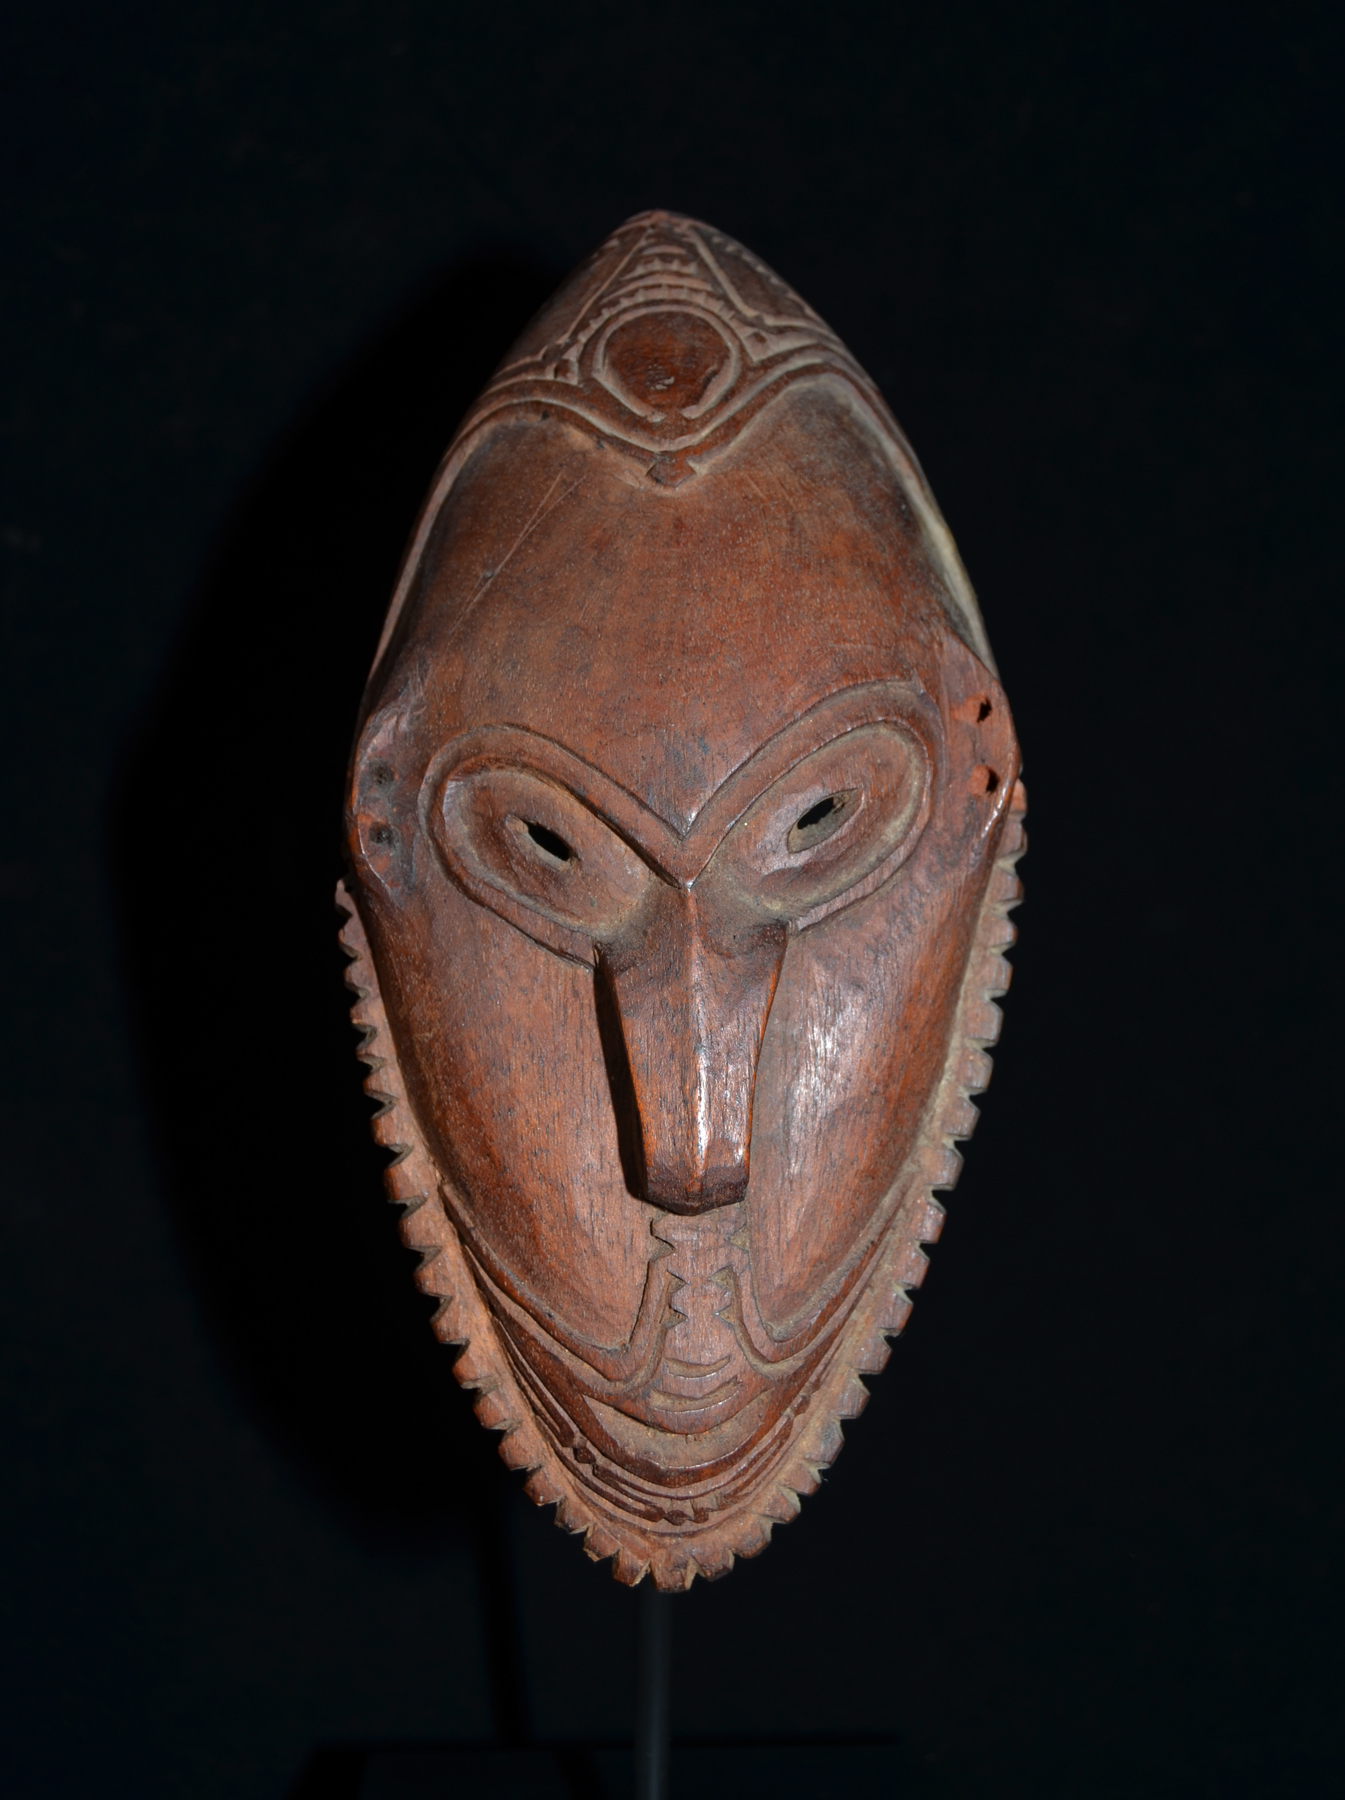 A Fine Old New Guinea Amulet Mask Coastal Sepik Area East Sepik Province Papua New Guinea Coll 1967